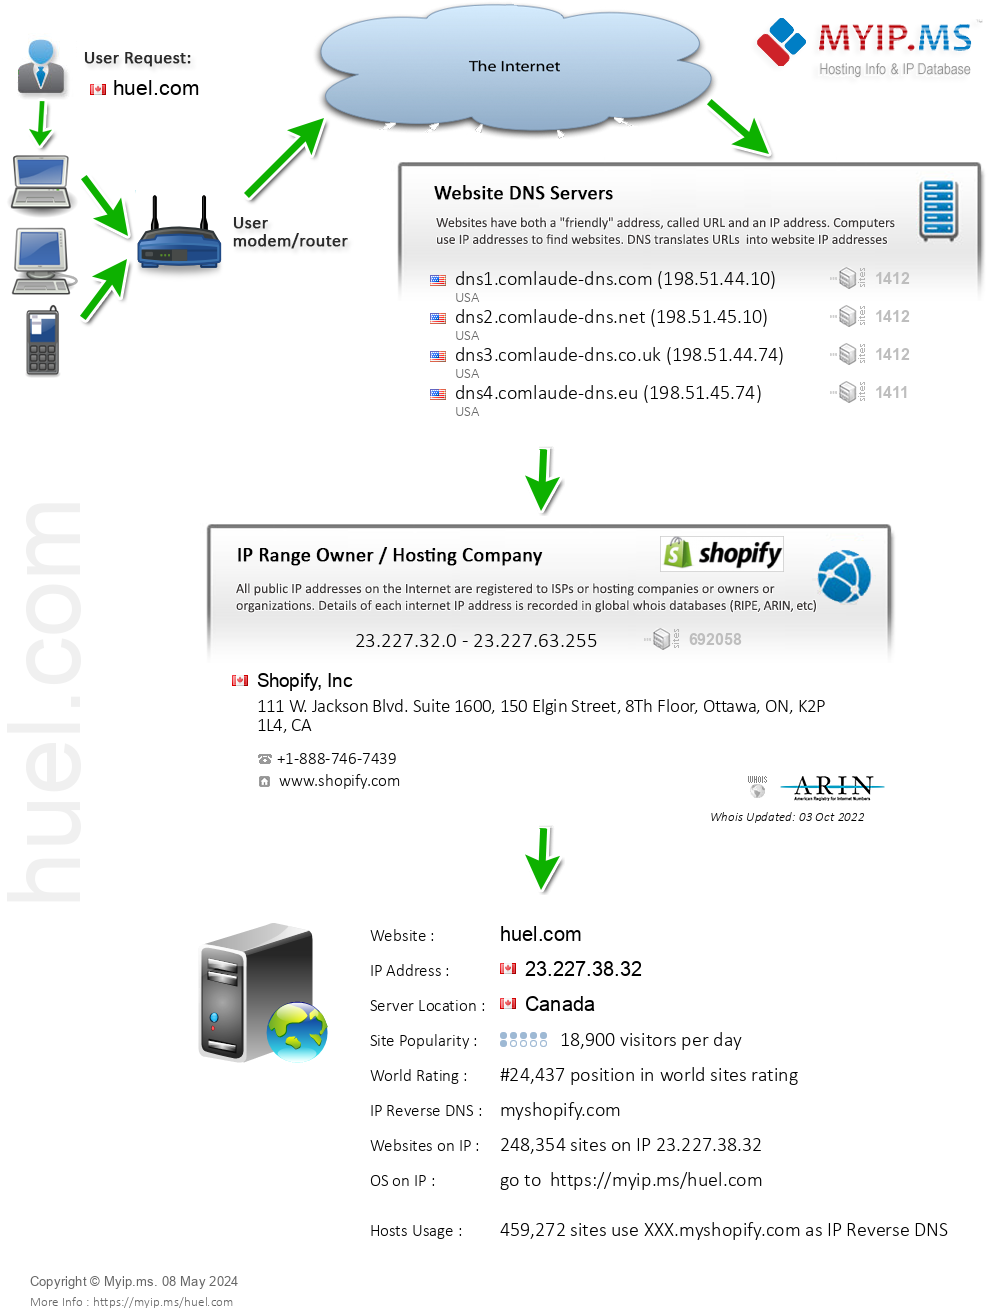 Huel.com - Website Hosting Visual IP Diagram